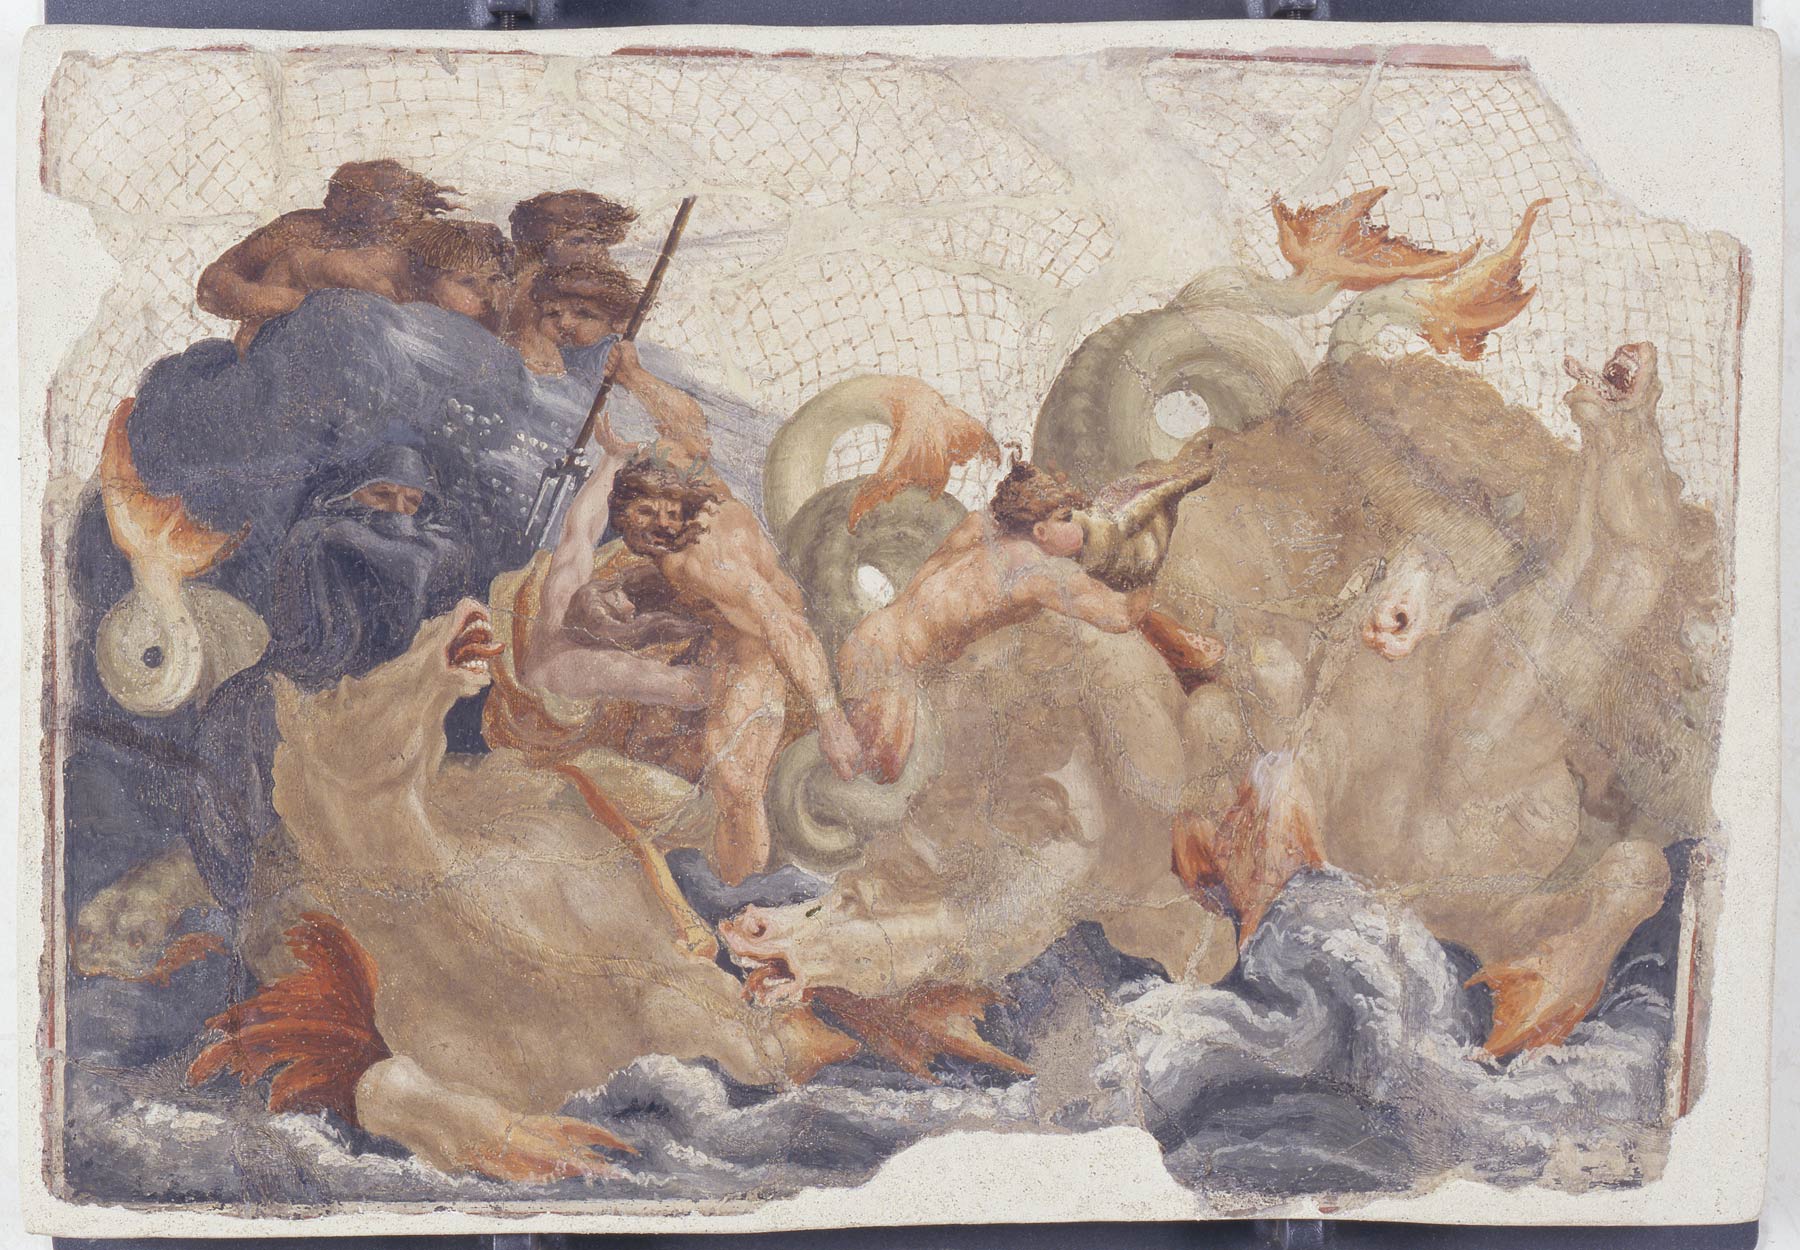 Lelio Orsi, Scena di diluvio (1555-1556 circa; affresco staccato, 37,5 x 55,5 cm; Modena, Galleria Estense)